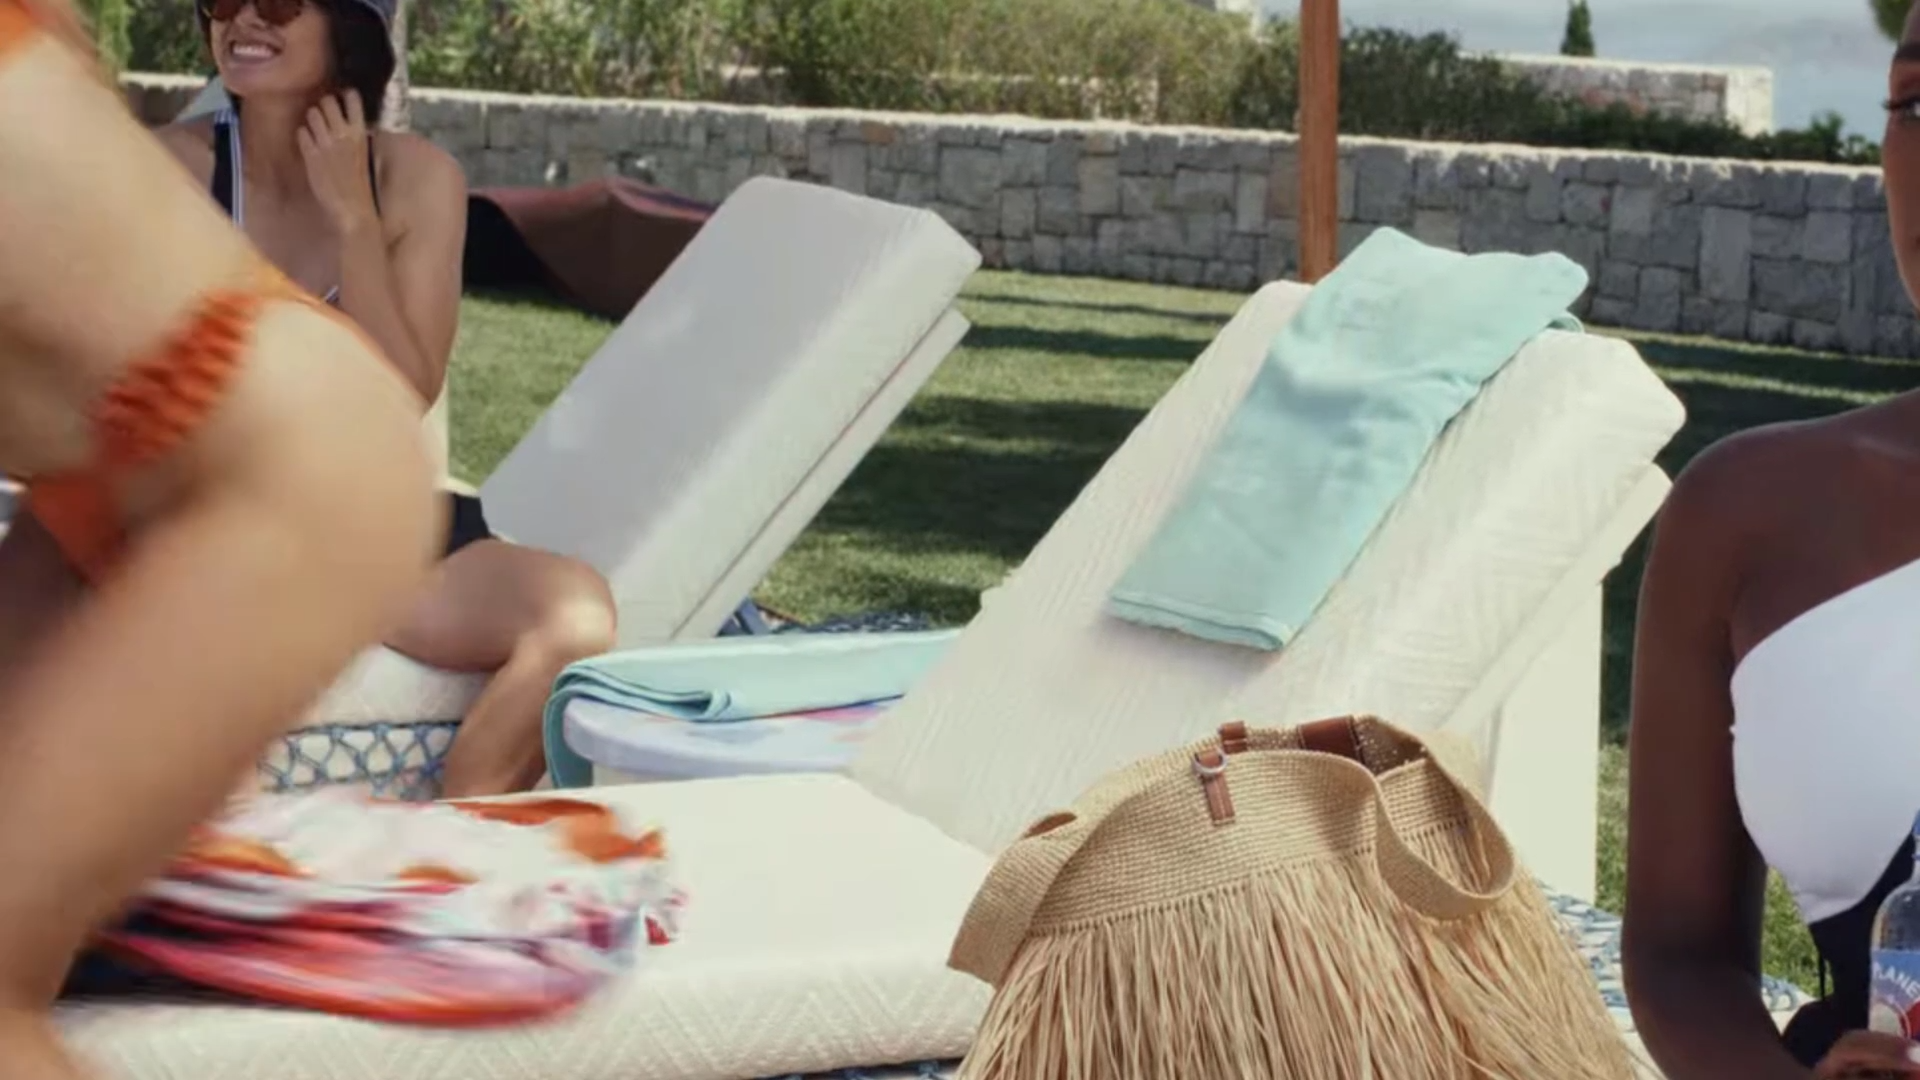 FOTOS El cuerpo en bikini de la pantalla grande de Kate Hudson! - Photo 1